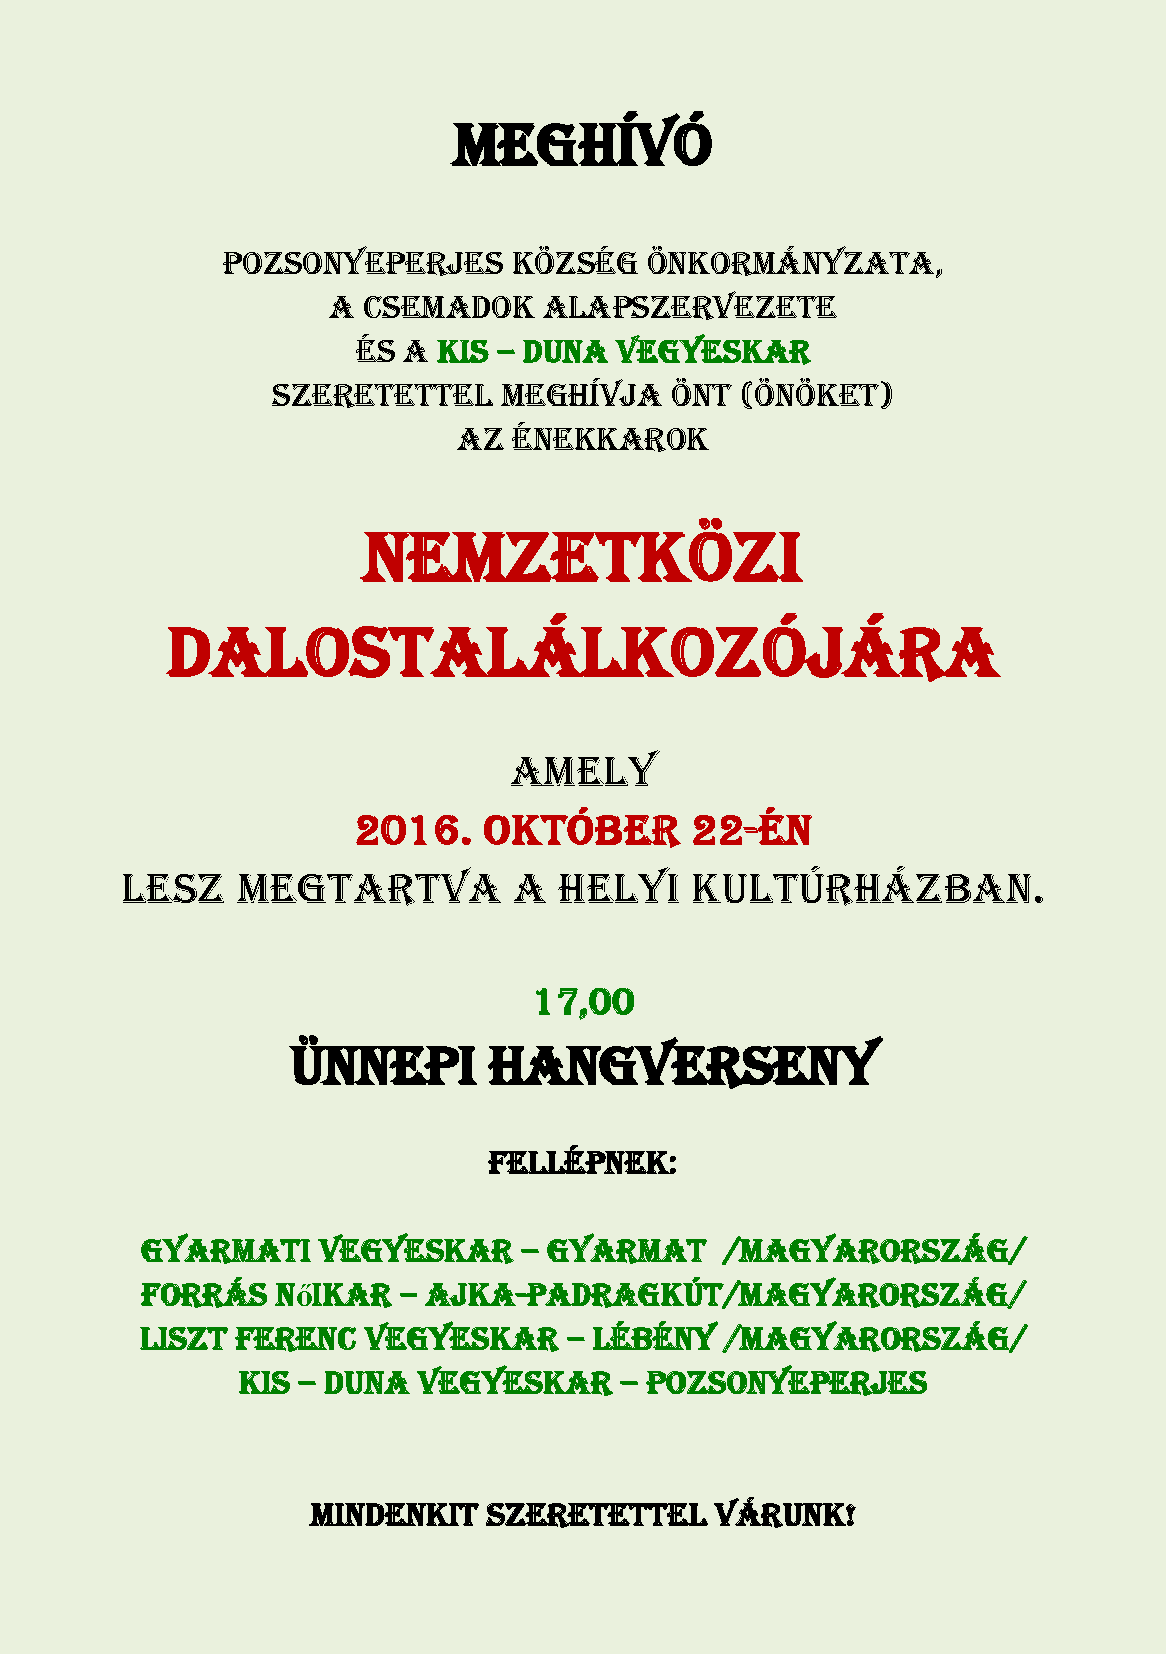 pozsonyeperjes-enekkari-talalkozo-2016.doc